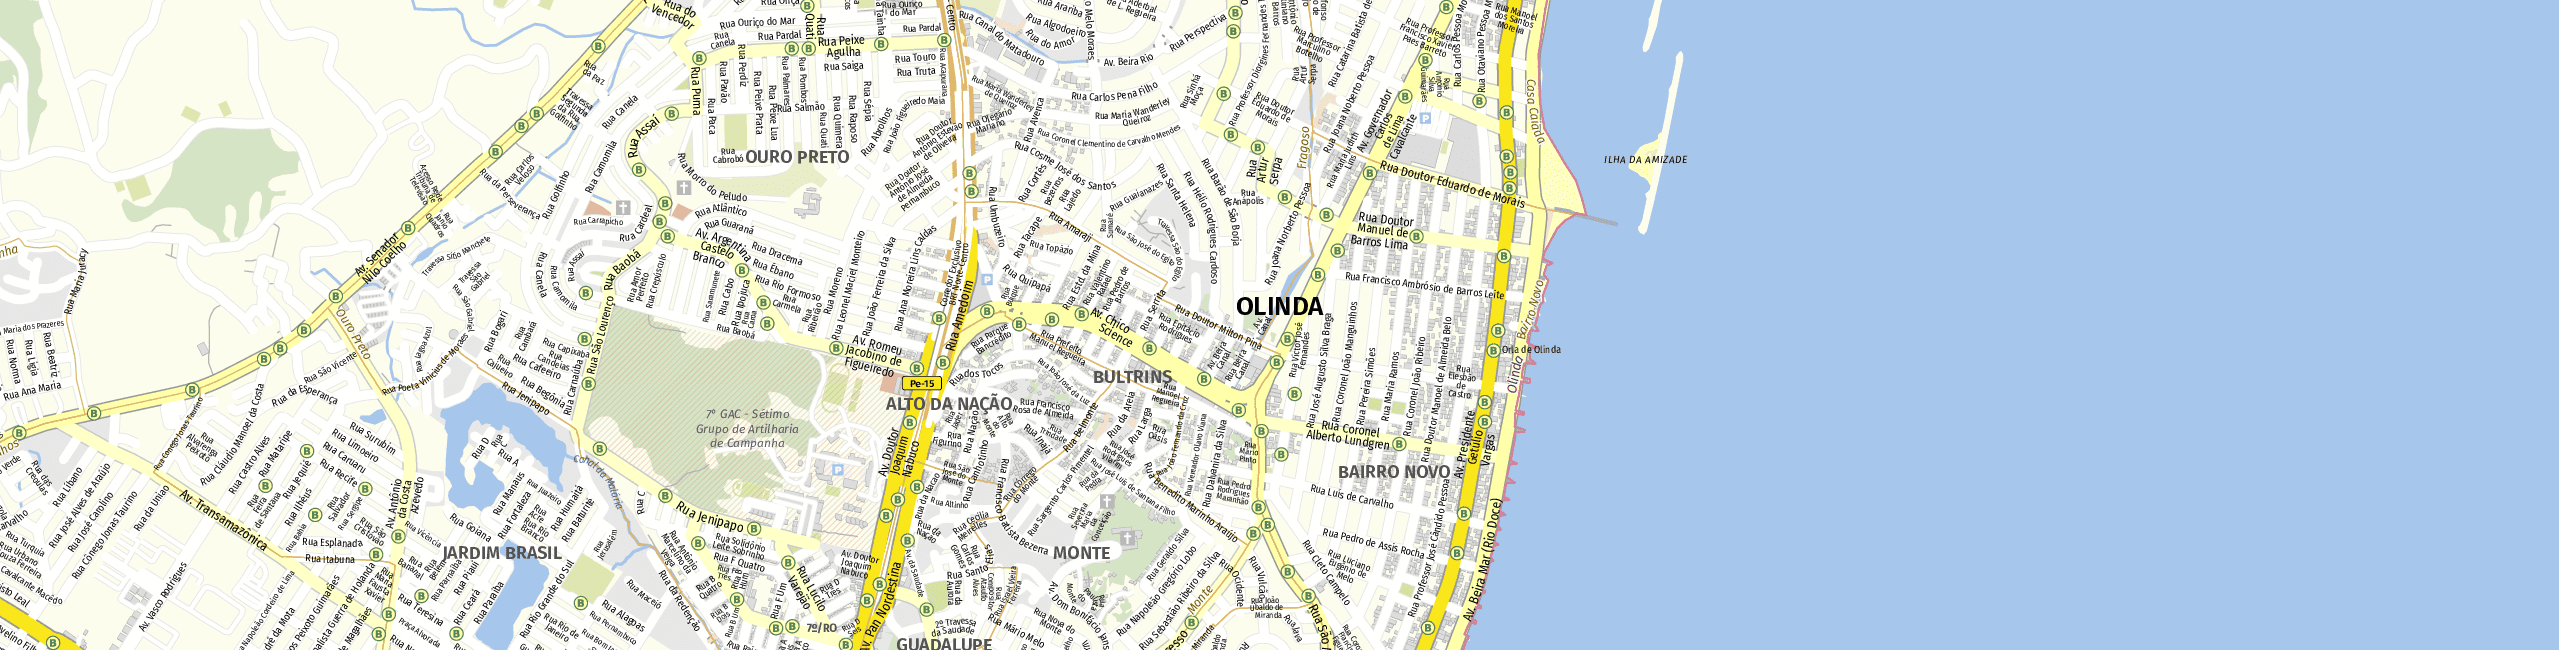 Stadtplan Olinda zum Downloaden.